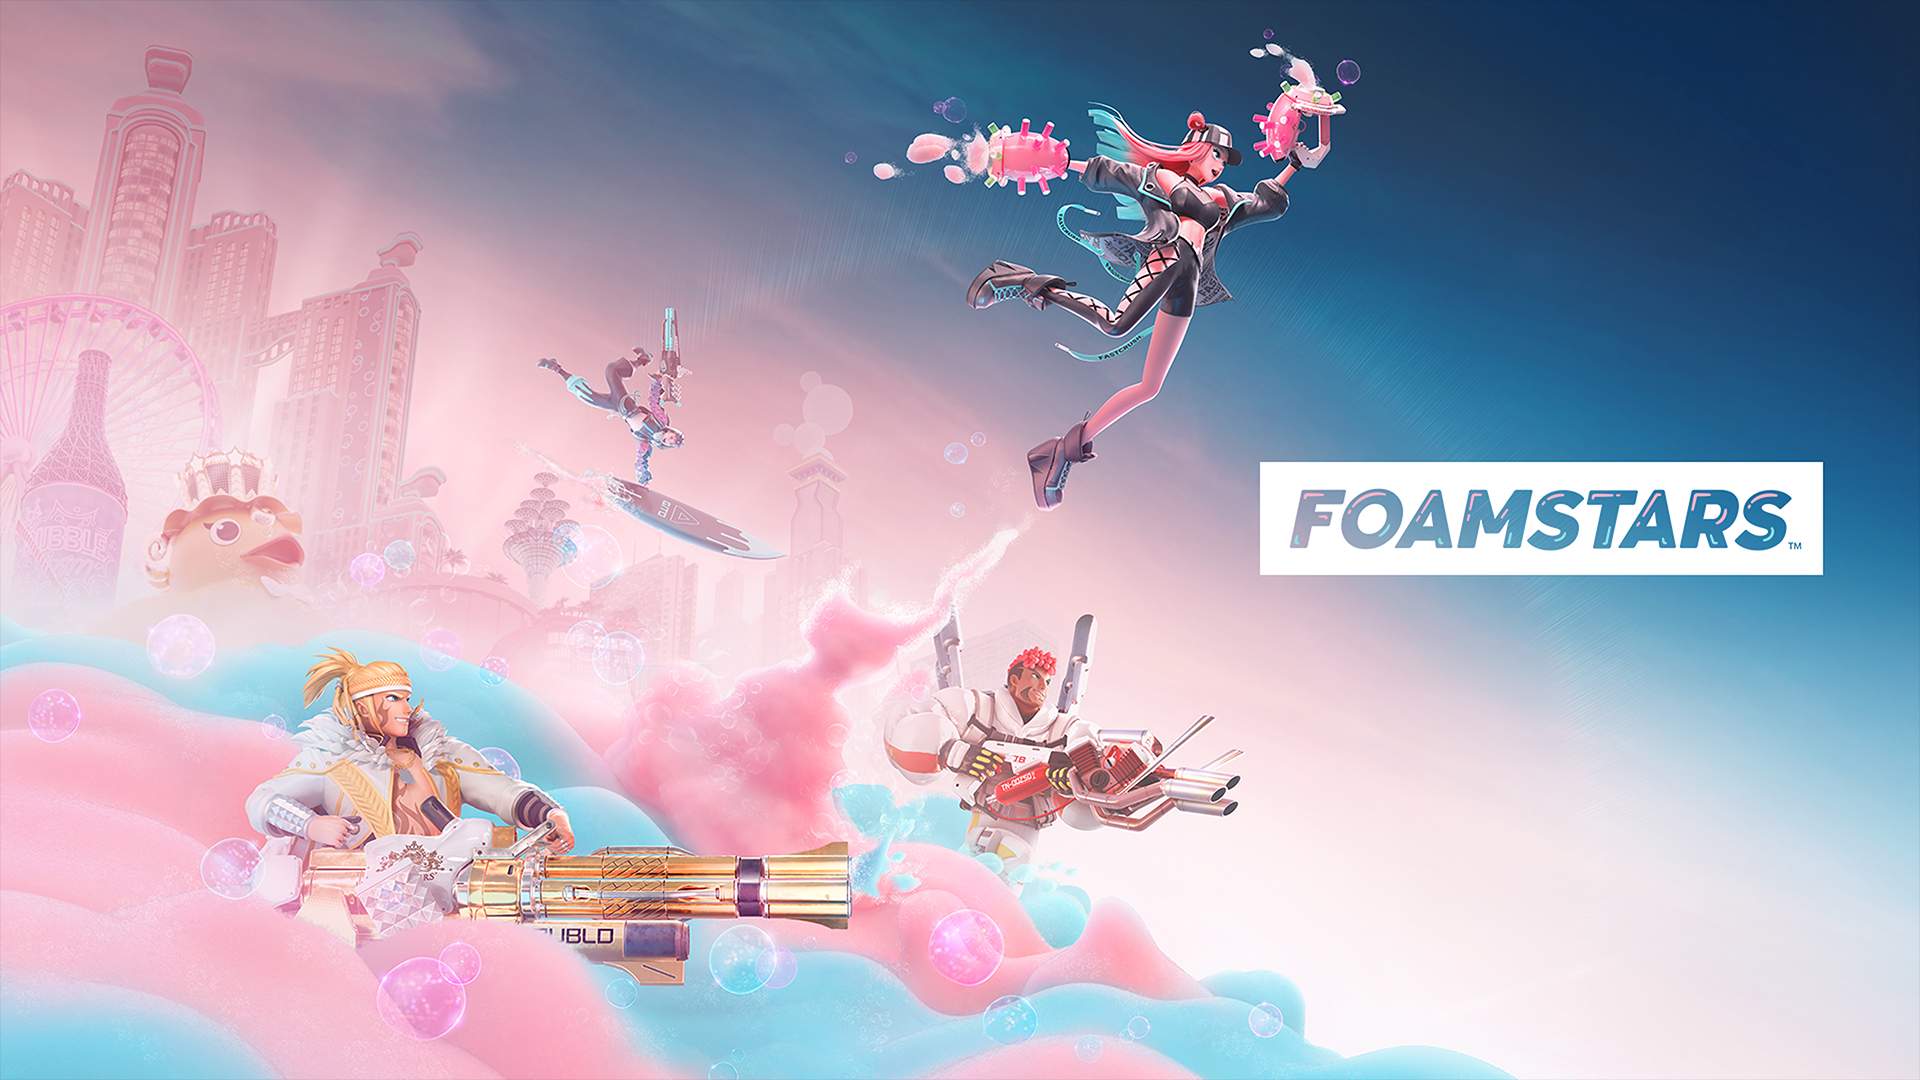 Vor einem Stadtbild mit dem FOAMSTARS-Logo steigen 4 Charaktere aus pinkem und blauem Schaum auf.